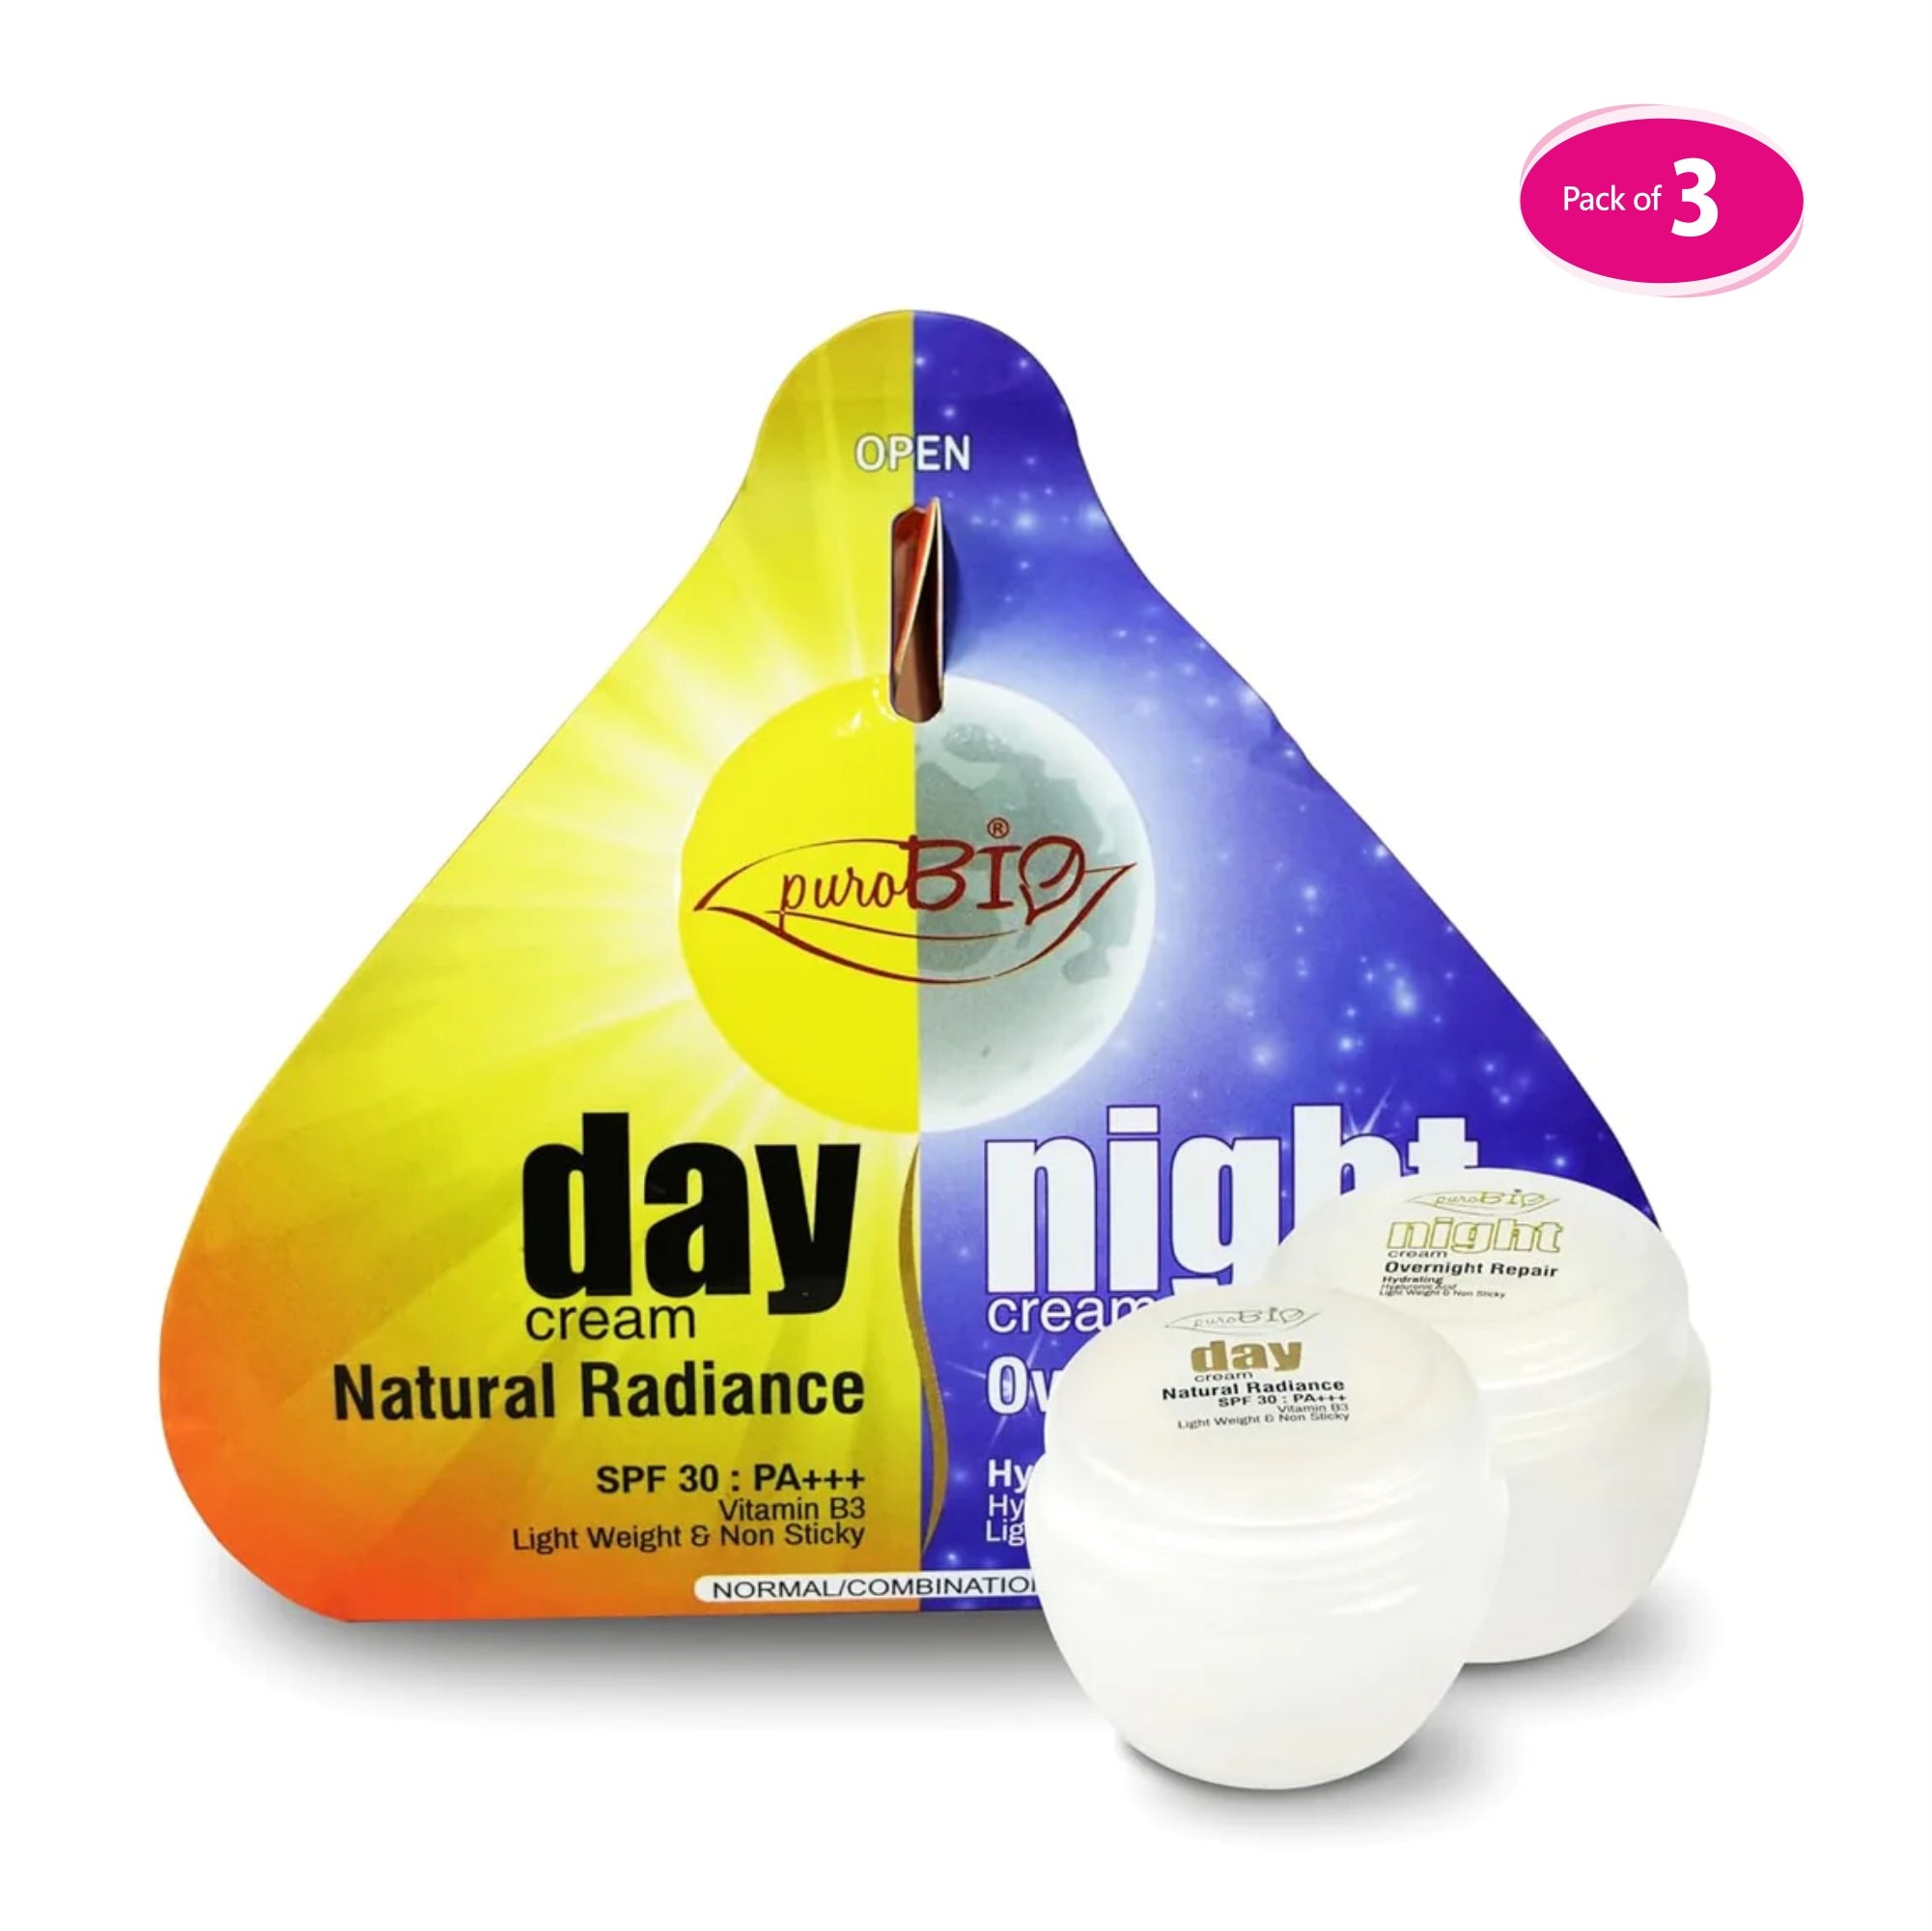  Day And Night spf-30 Cream in bulk 3 quantity